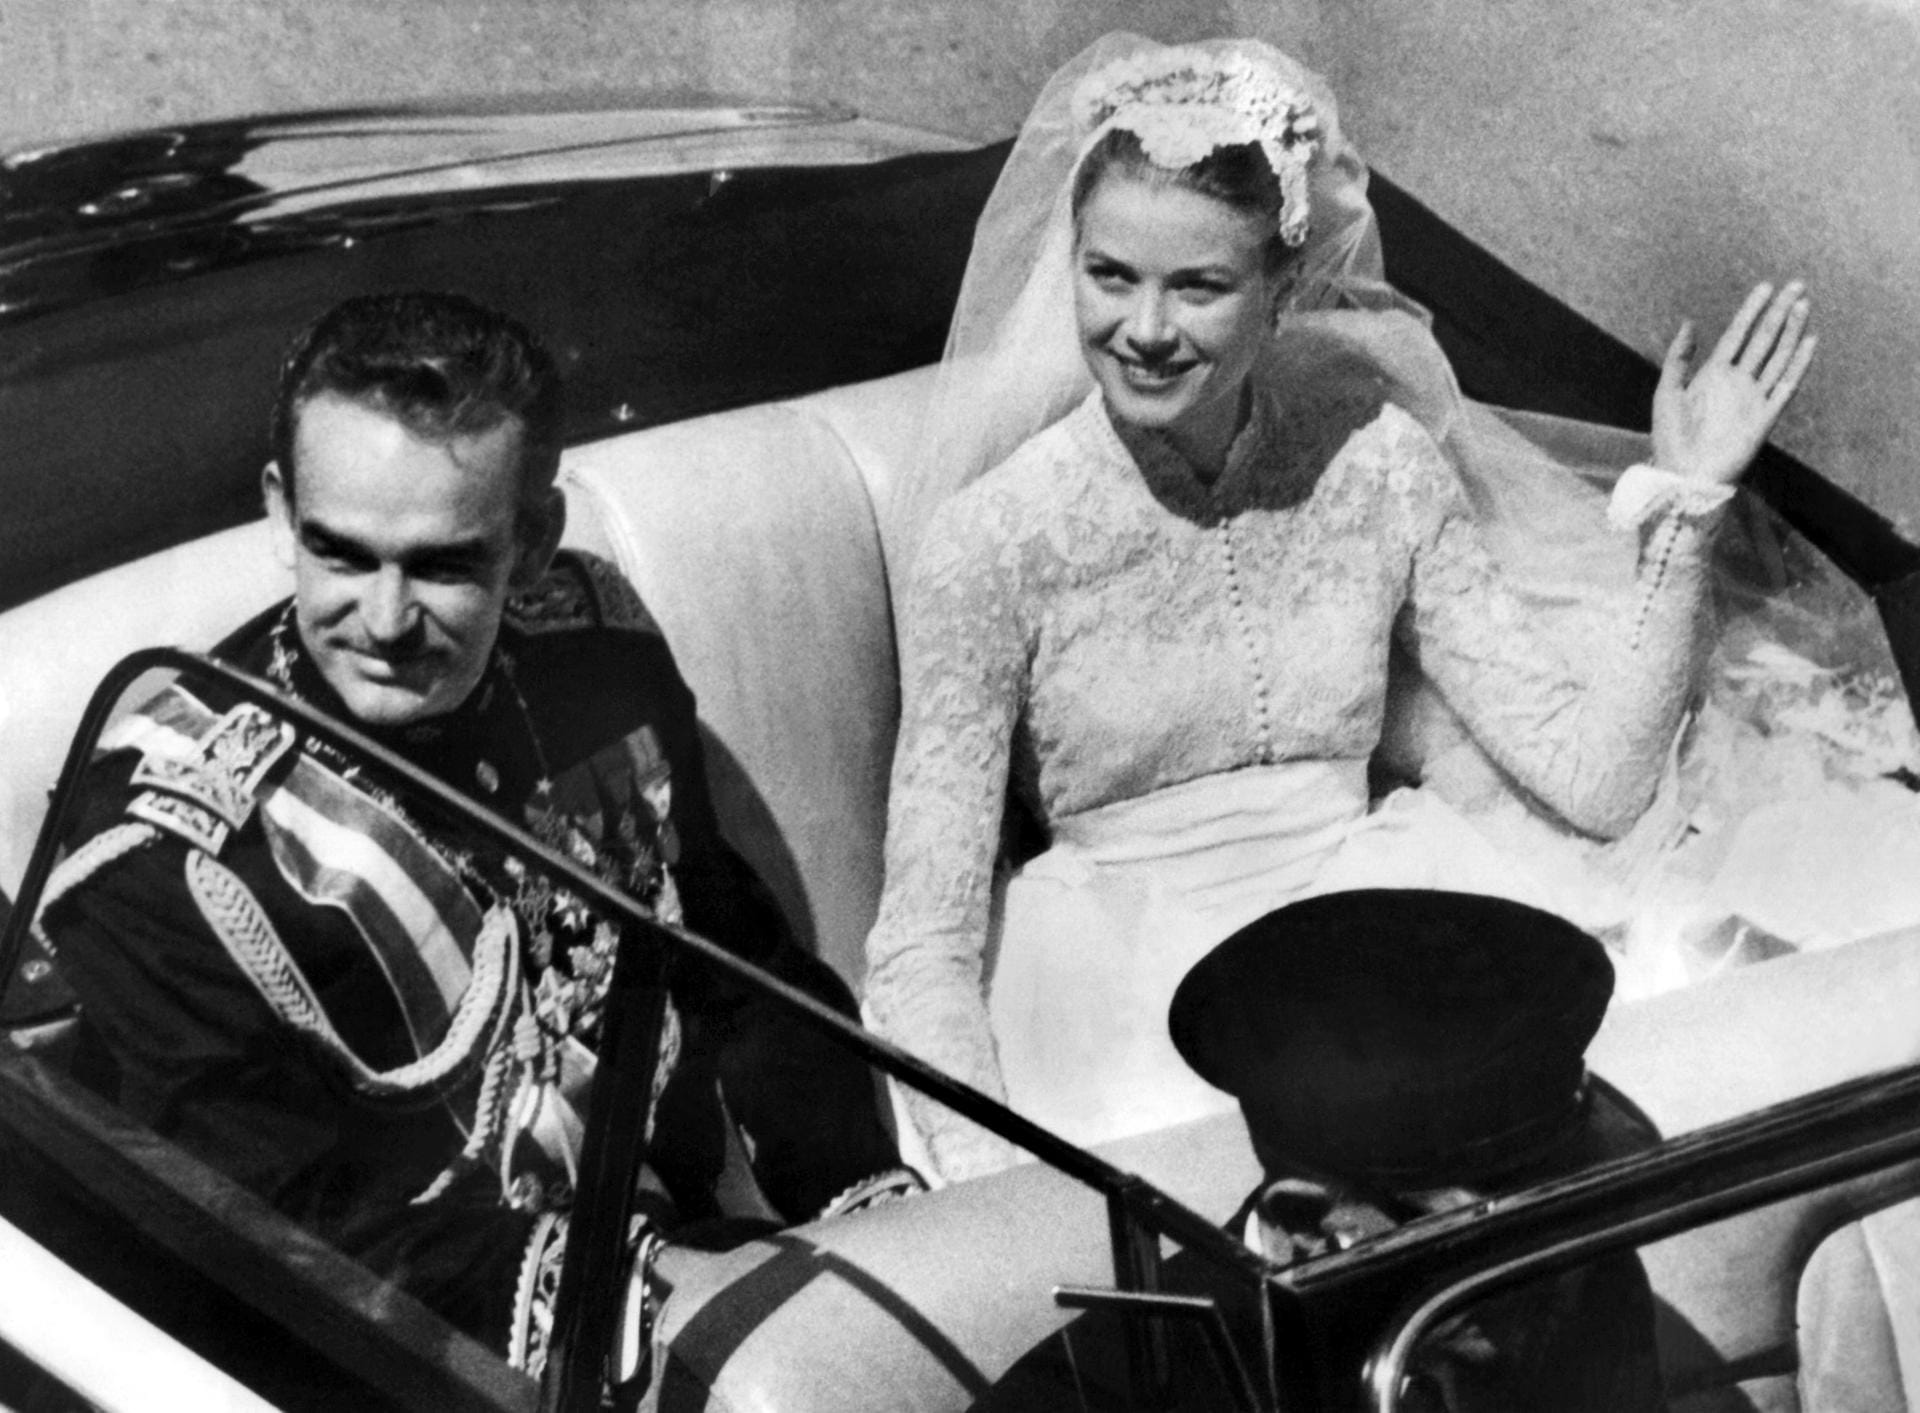 Eine echte Märchenhochzeit fand 1956 in Monaco statt: Fürst Rainier III. ehelichte Hollywood-Star Grace Kelly, die fortan den Namen Gracia Patricia trug. Die beiden hatten sich ein Jahr zuvor bei den Filmfestspielen in Cannes kennengelernt - und schon bald ineinander verliebt.